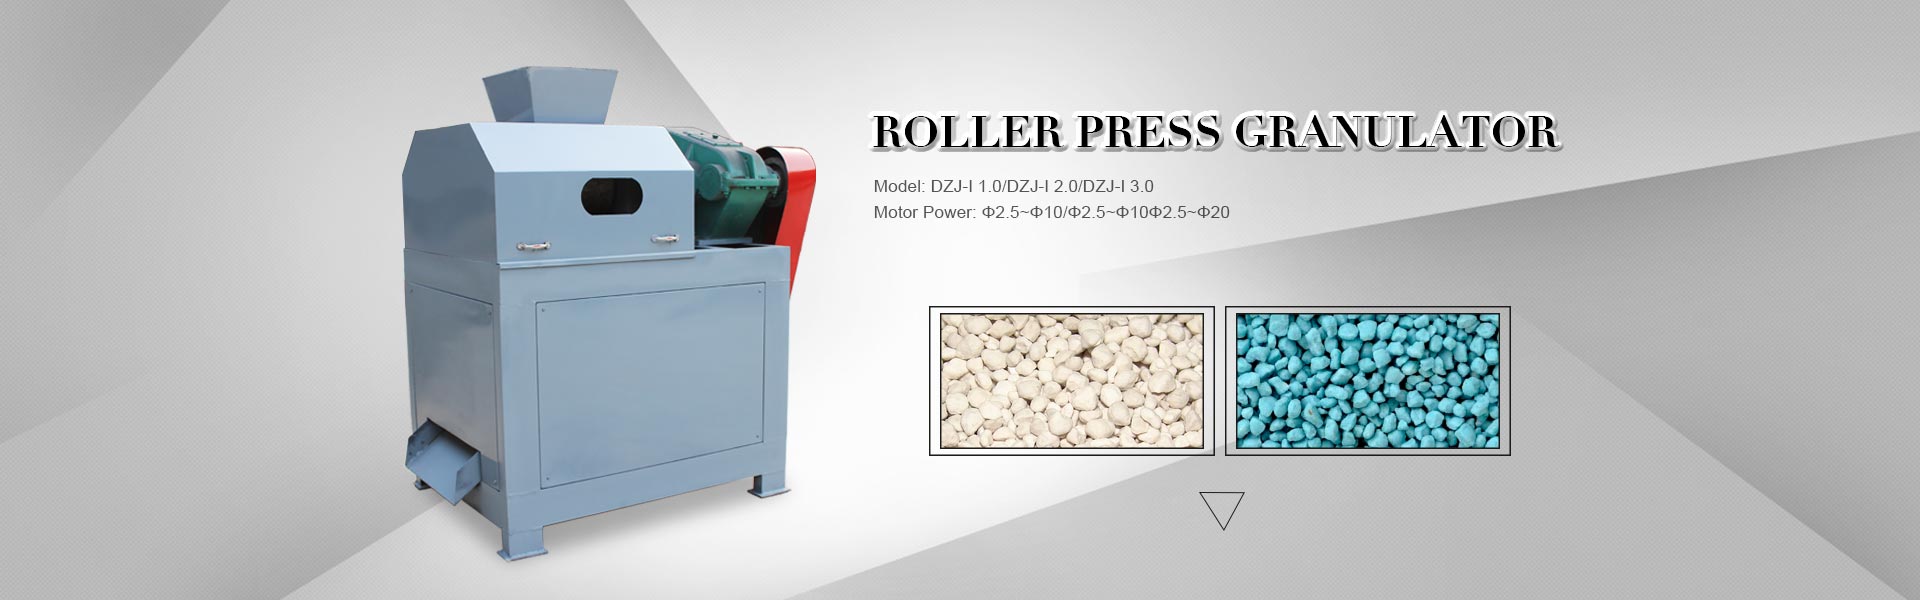 Roller Press Granulator